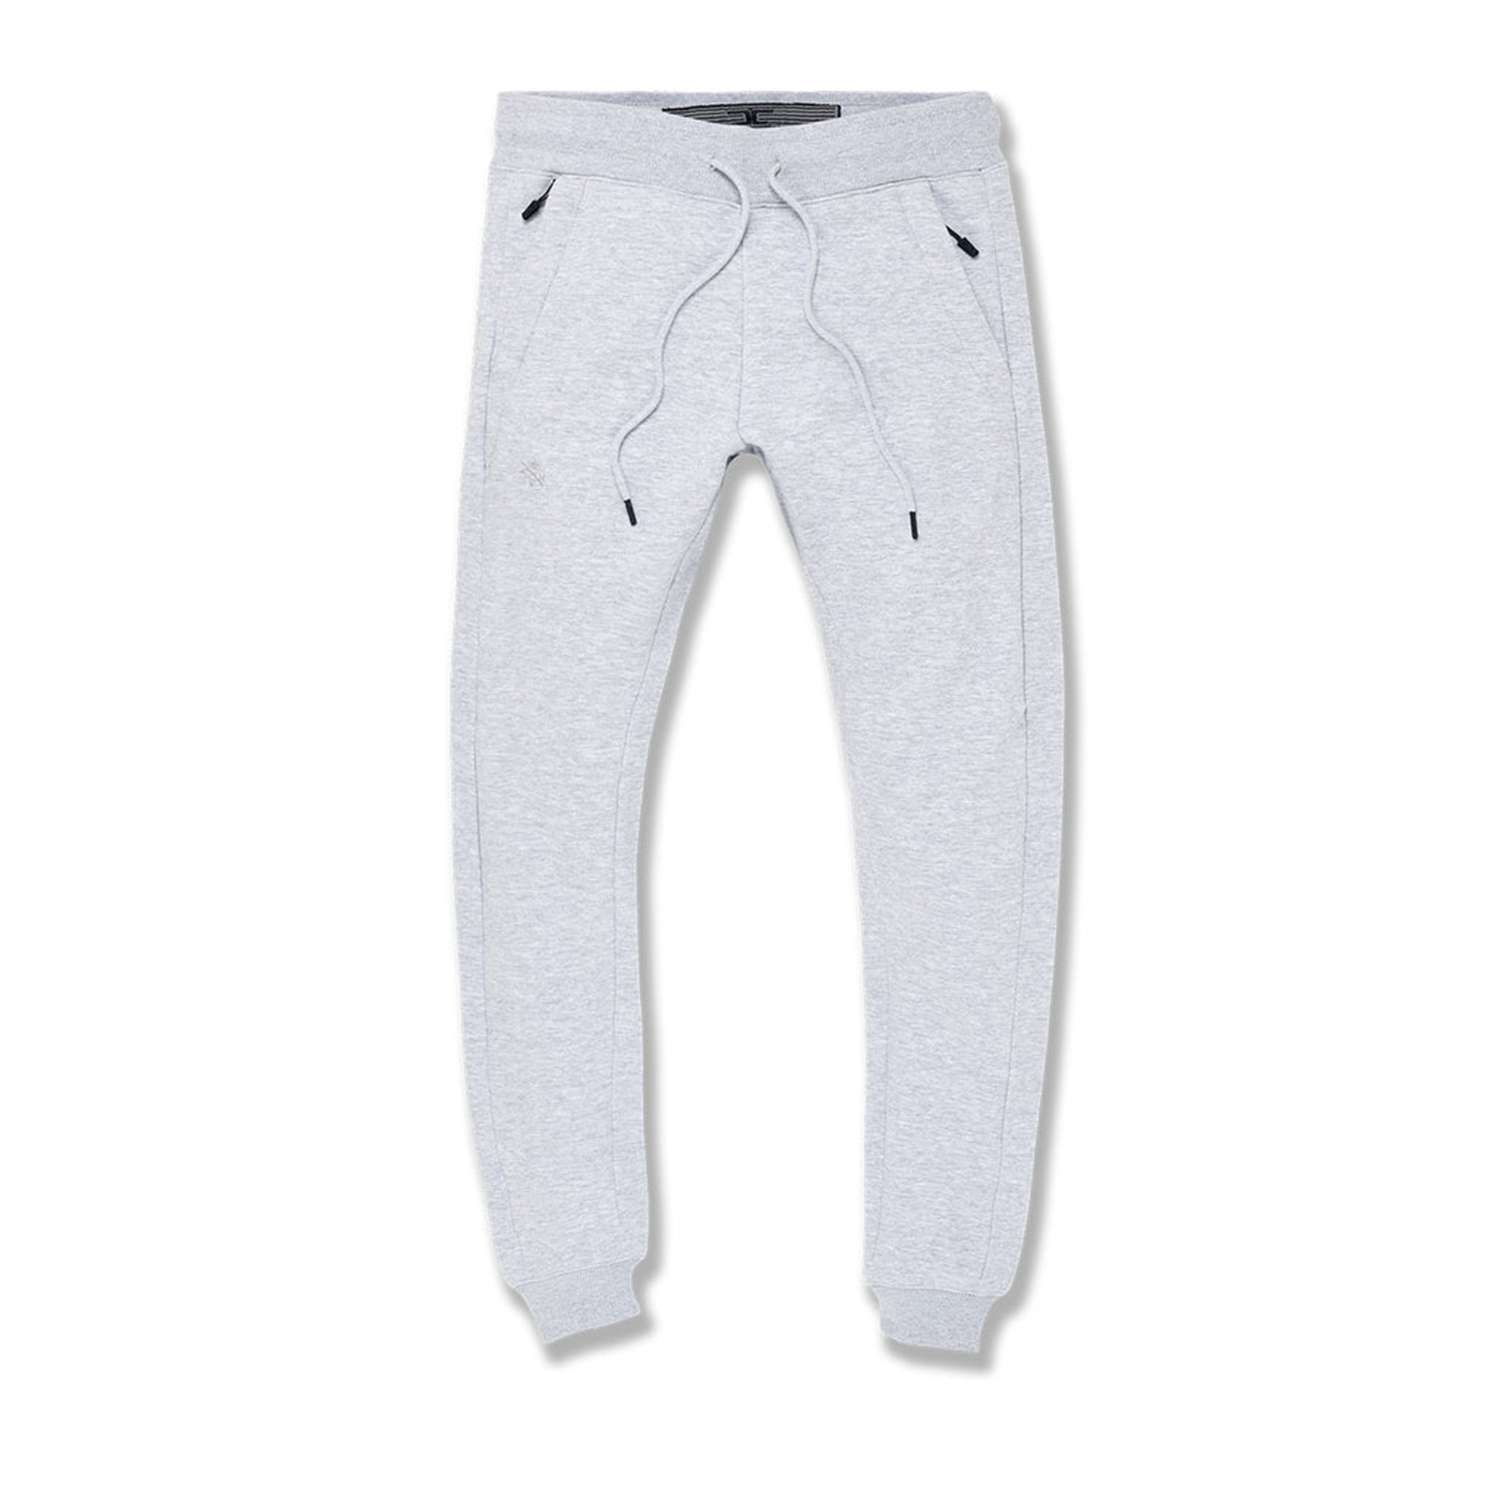 Мужские спортивные штаны Jordan Craig Uptown Modern Fleece Jogger Heather Grey 8620-hgry